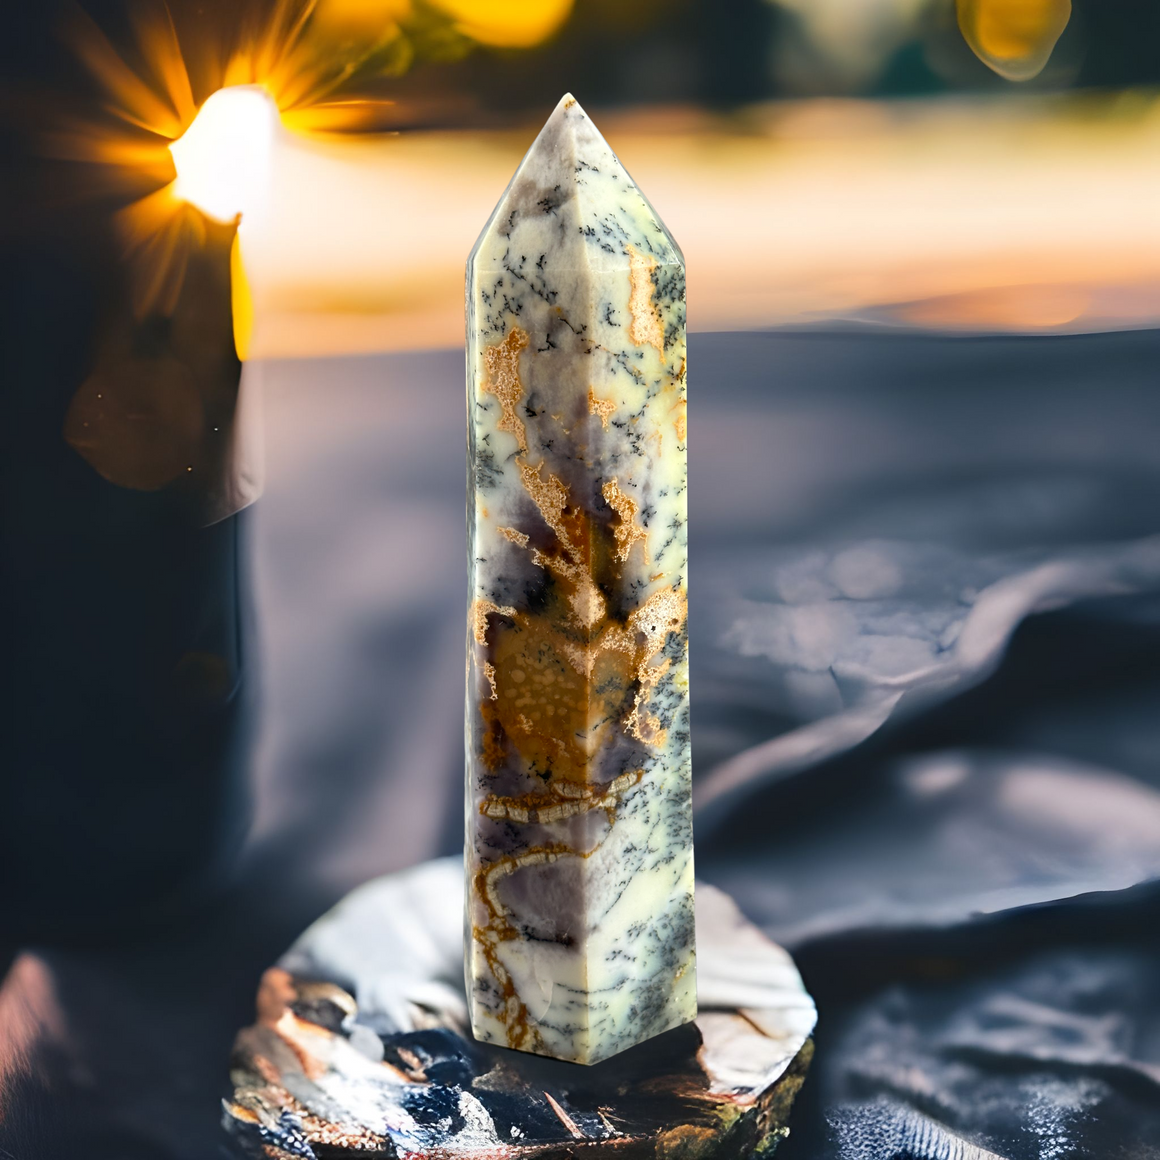 Large Merlinite Crystal Prism